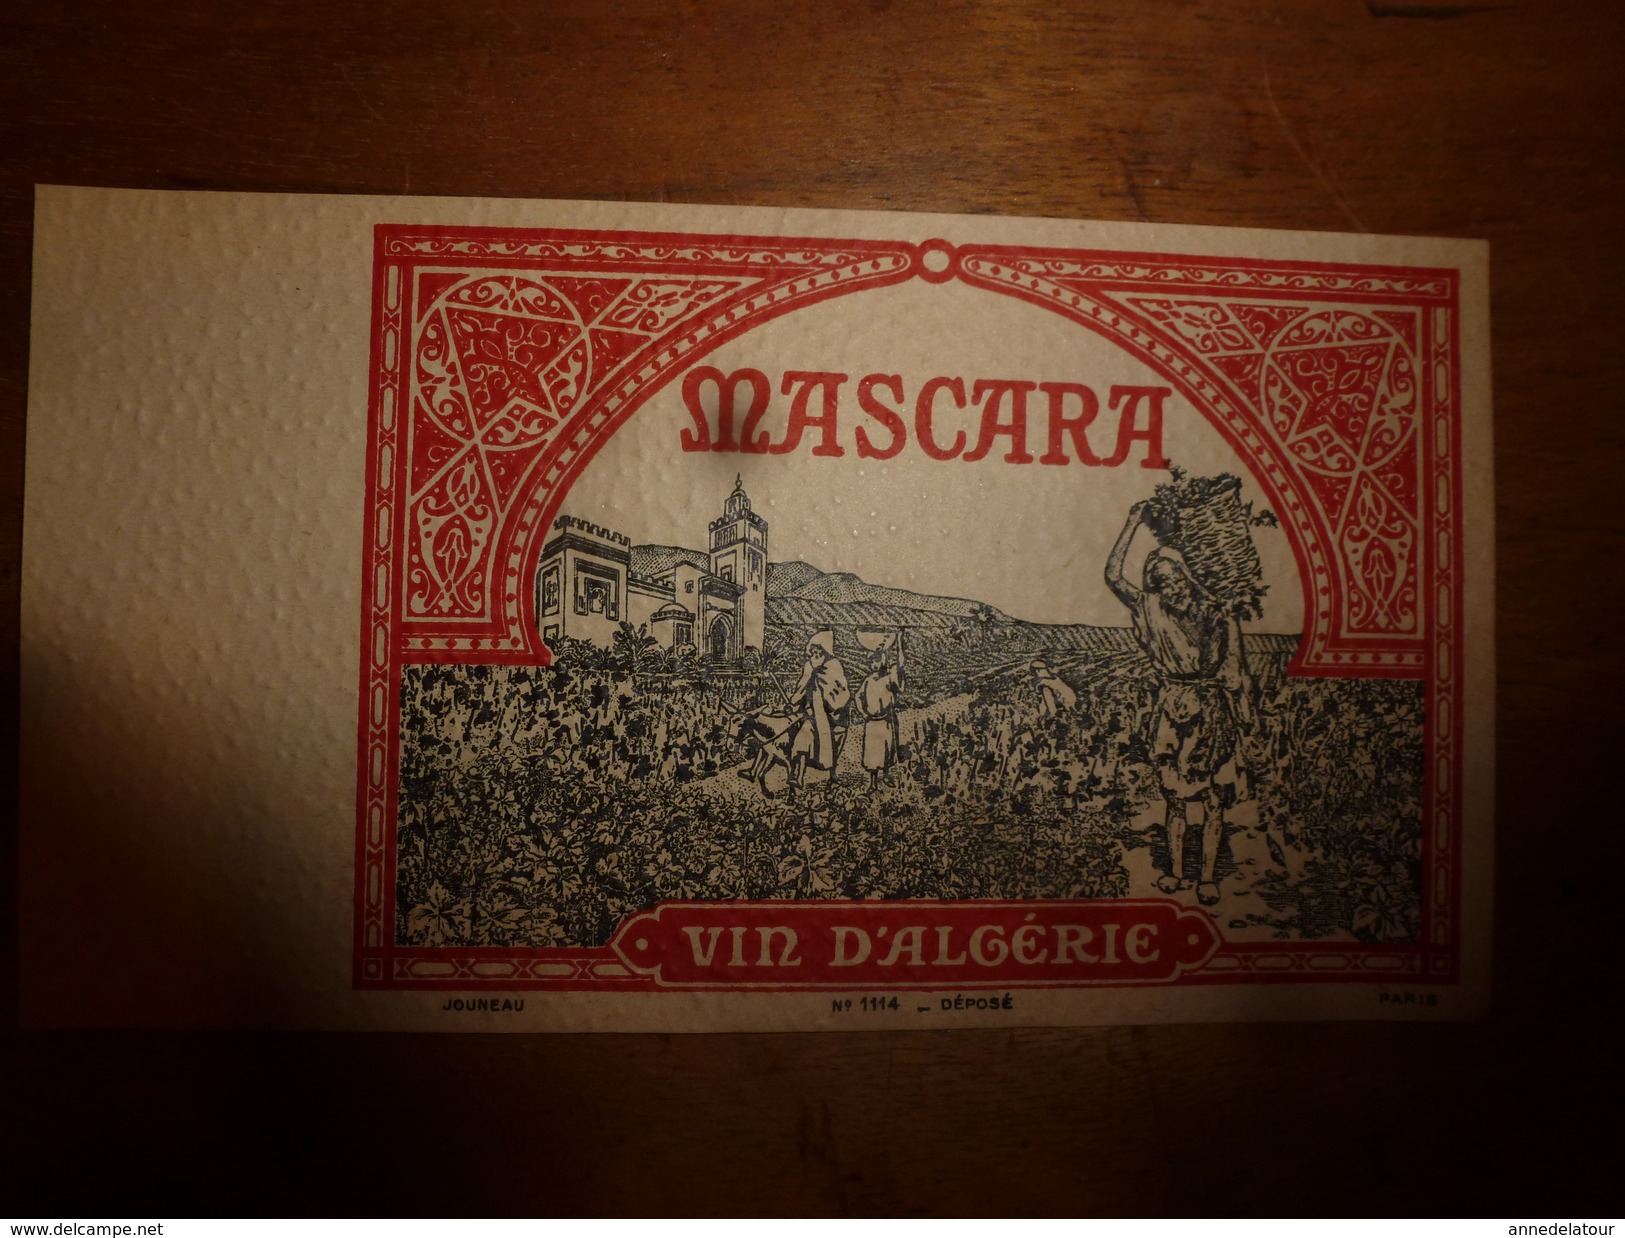 1920 ? Spécimen étiquette De Vin  D'ALGERIE - MASCARA   N° 1114, Déposé,  Imprimerie G.Jouneau  3 Rue Papin à Paris - People